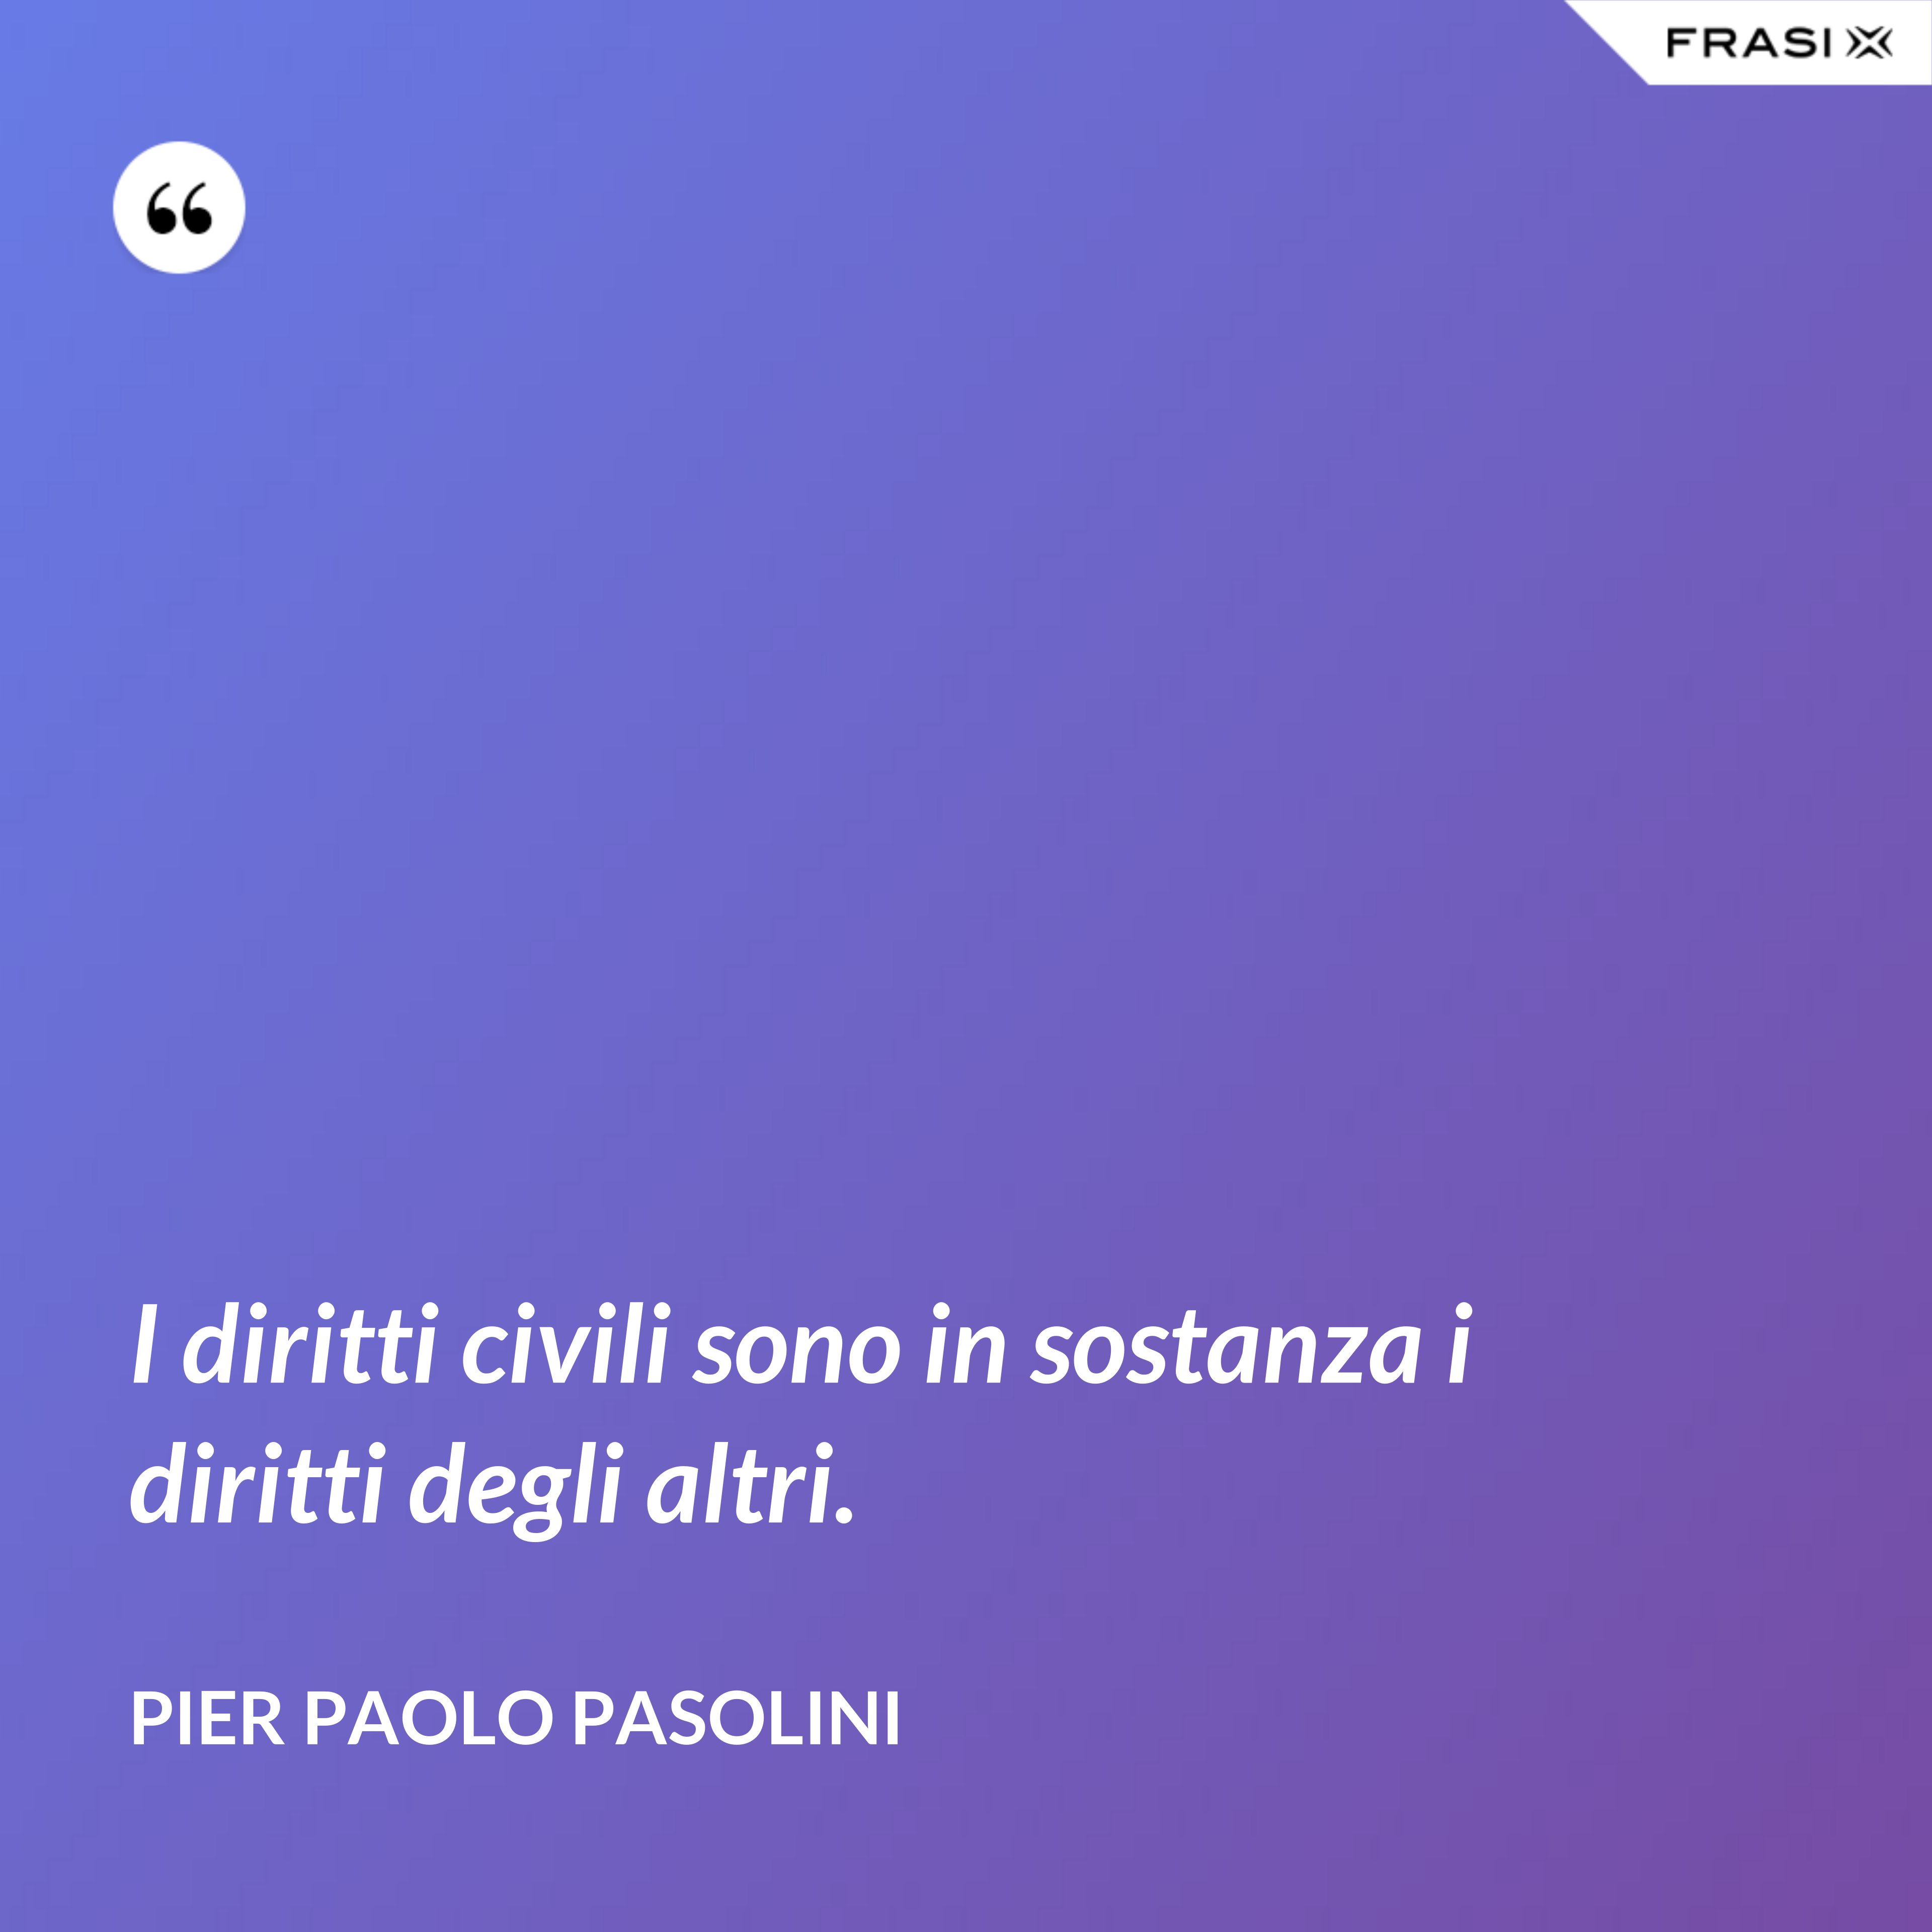 I diritti civili sono in sostanza i diritti degli altri. - Pier Paolo Pasolini